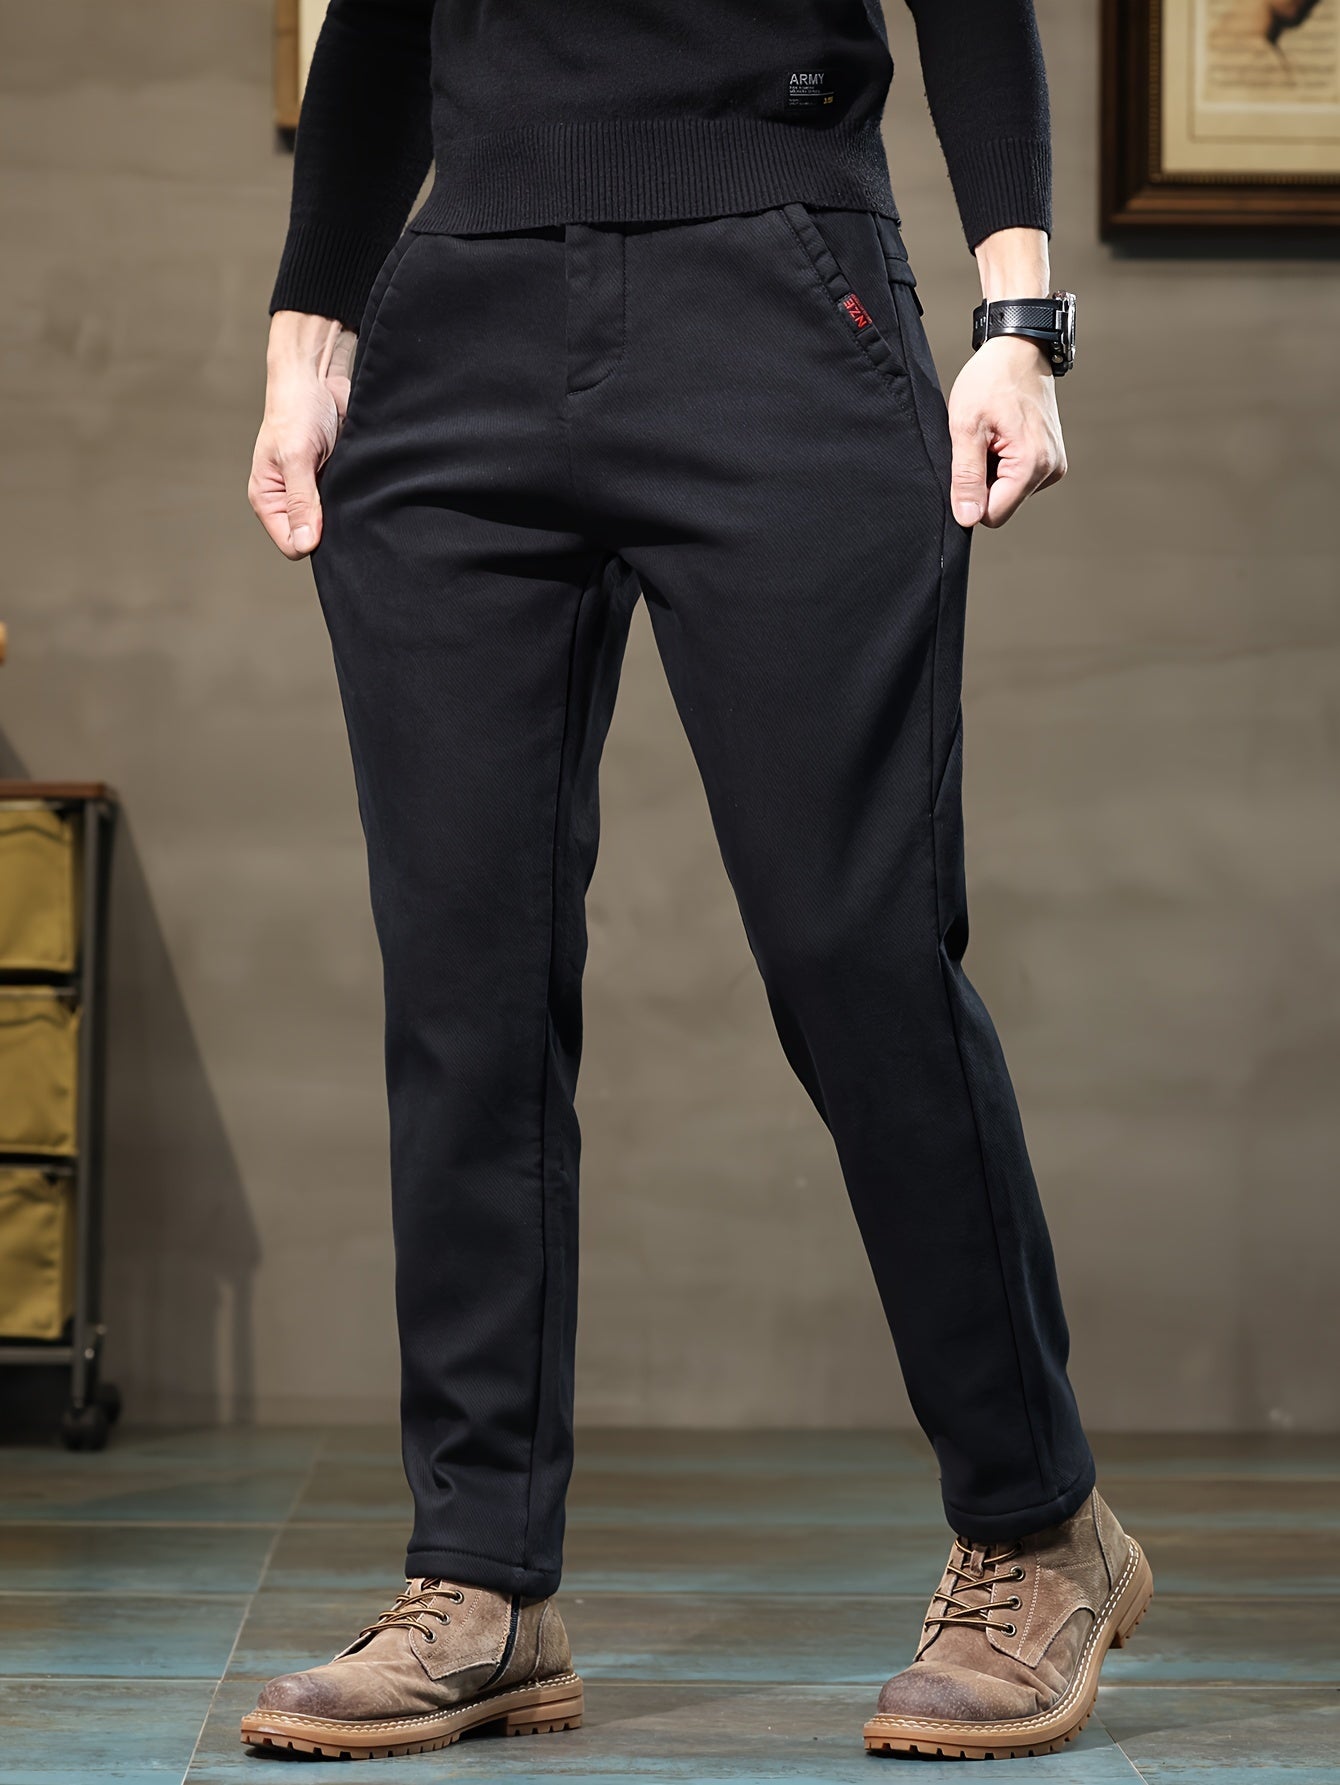 Men's Semi-formal Skinny Pants For Fall Winter Business